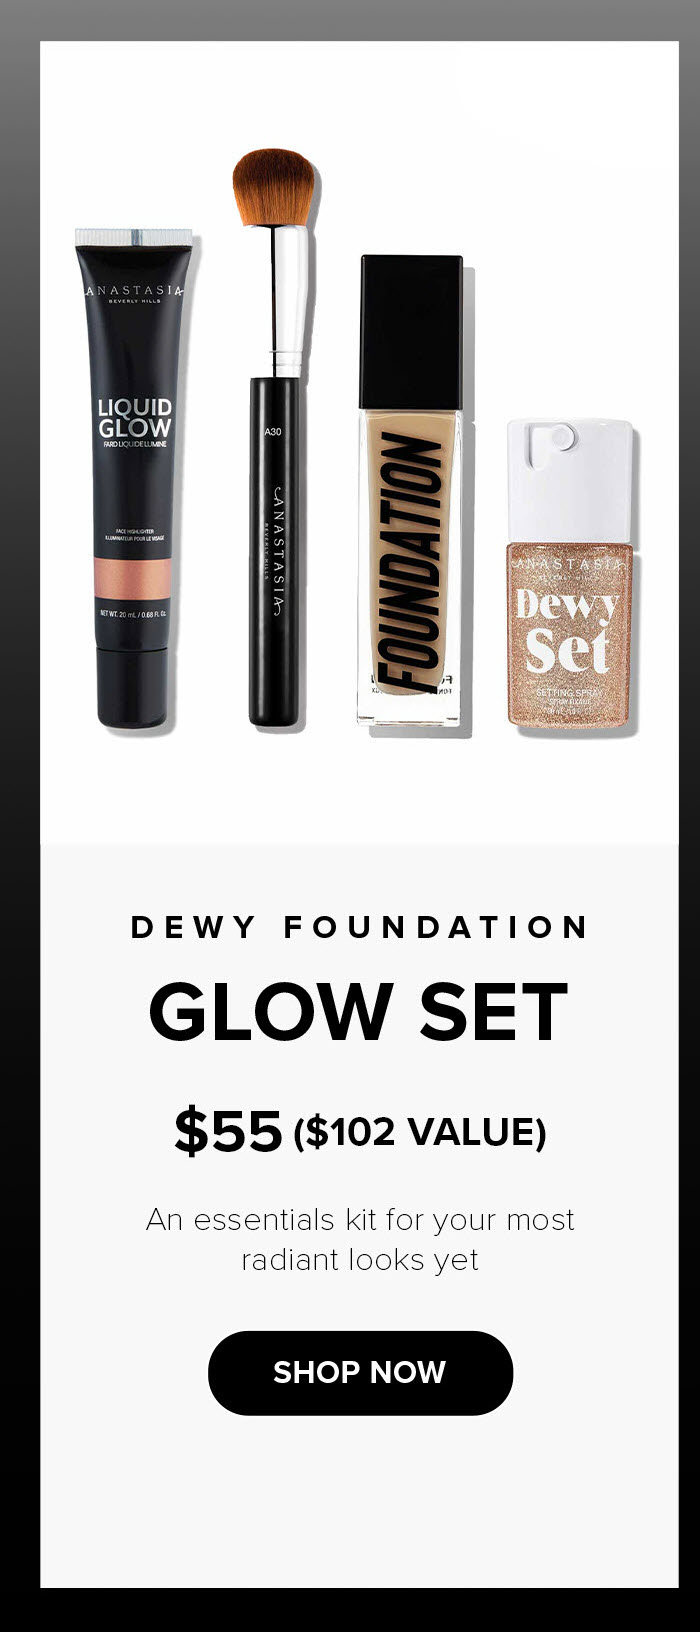 Dewy Foundation Glow Set - Shop Now